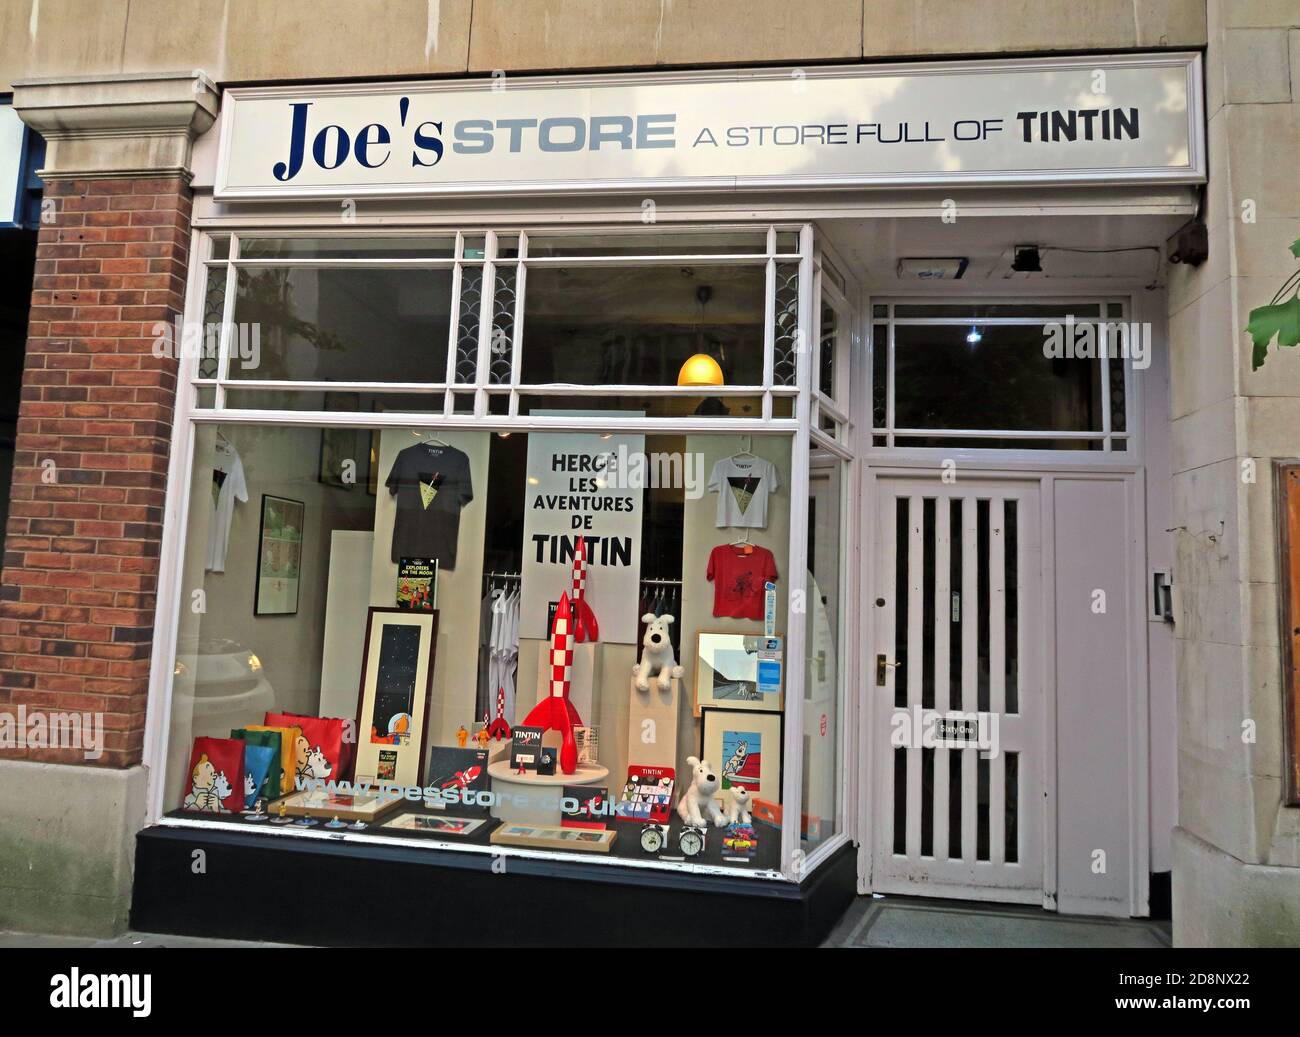 Joes Store, un magasin plein de Tintin, 61 Friar Lane, Nottingham, Nottinghamshire, Angleterre, Royaume-Uni, NG1 6DH Banque D'Images